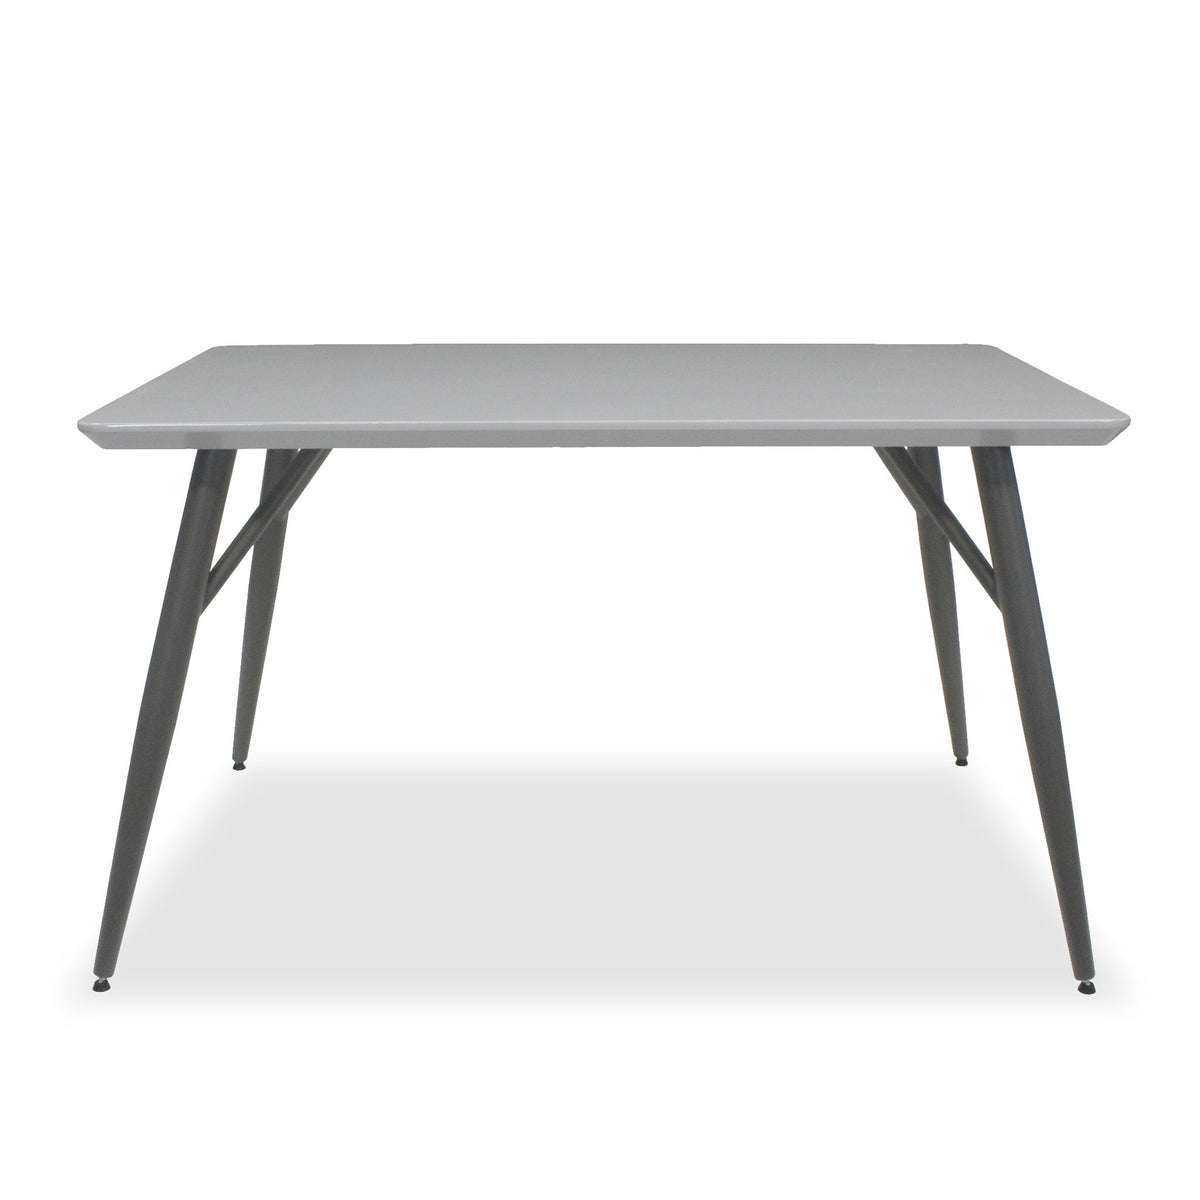 PAros 130cm Rectangular Dining Table from Roseland Furniture